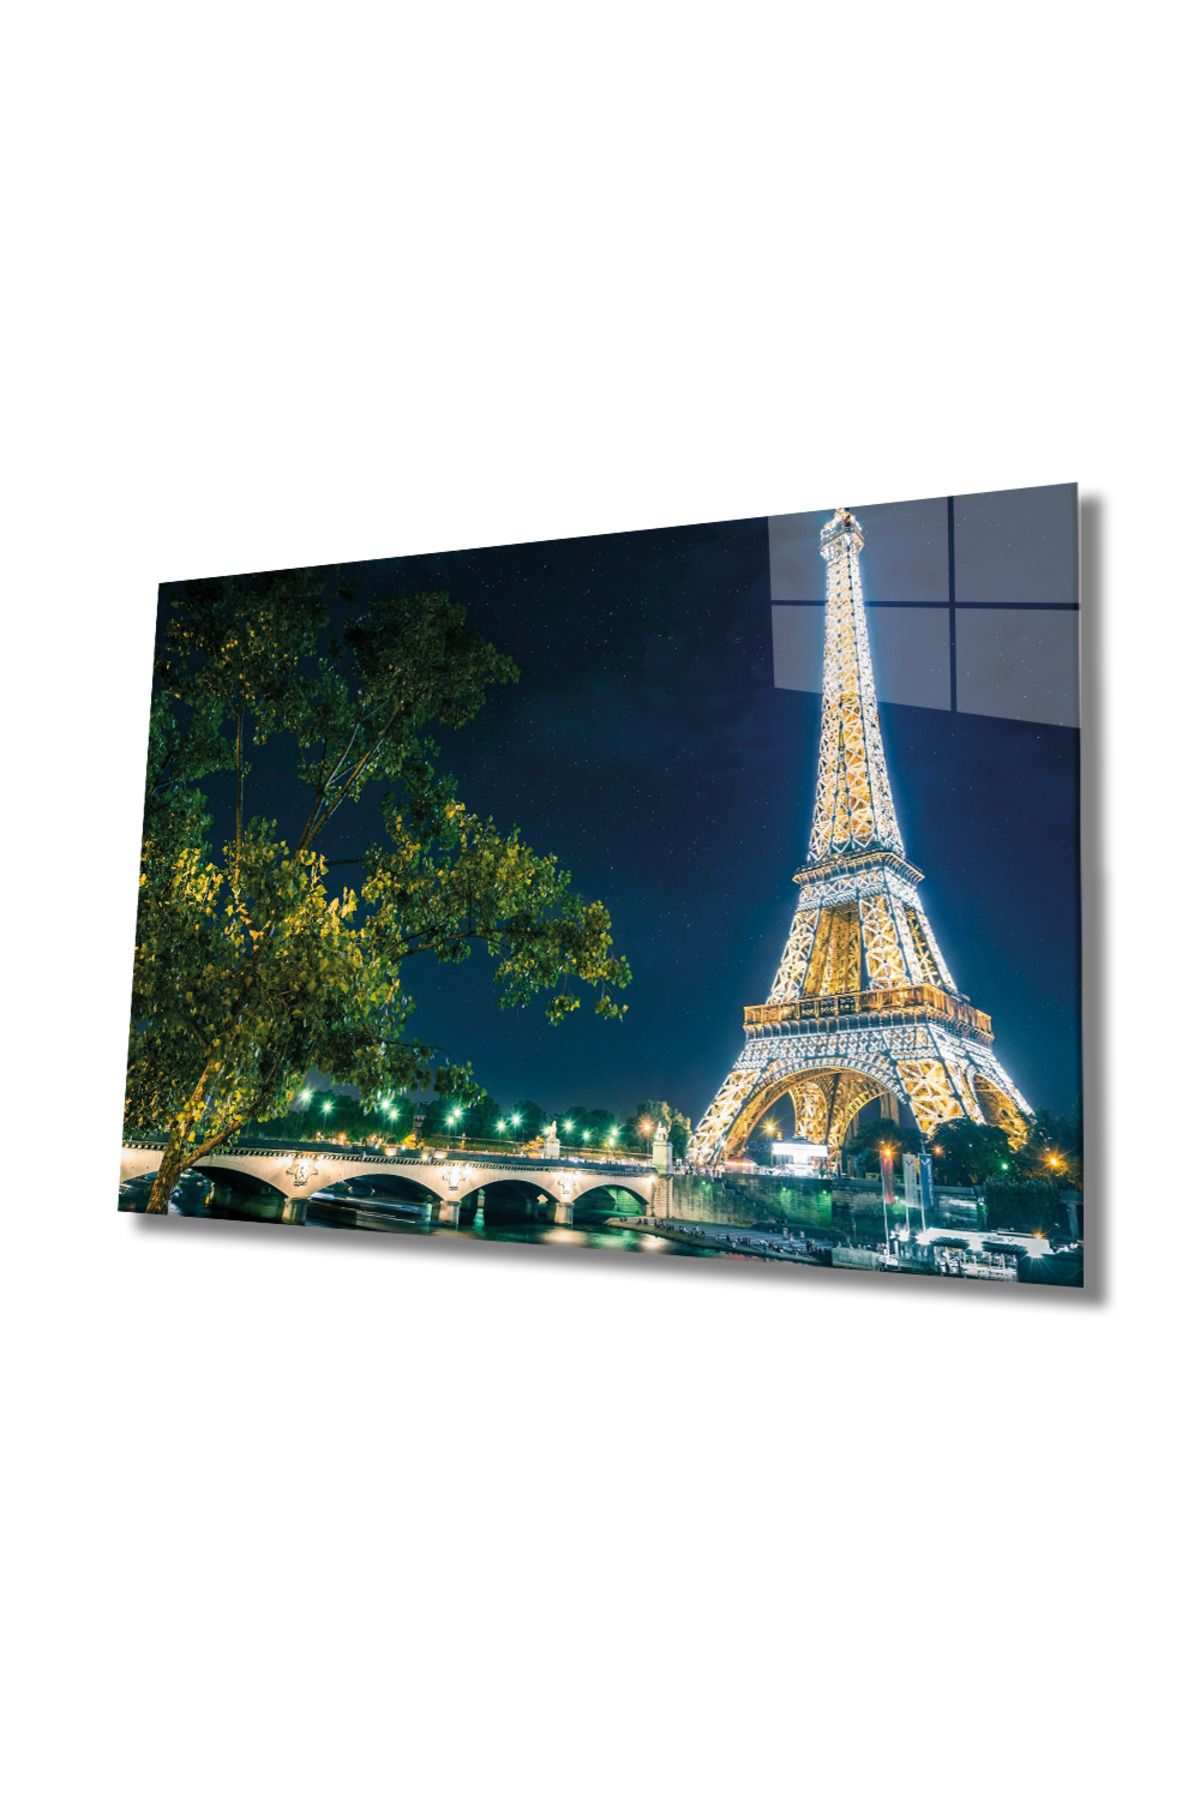 Genel Markalar HG  Eyfel Kulesi Cam Tablo Eiffel Tower